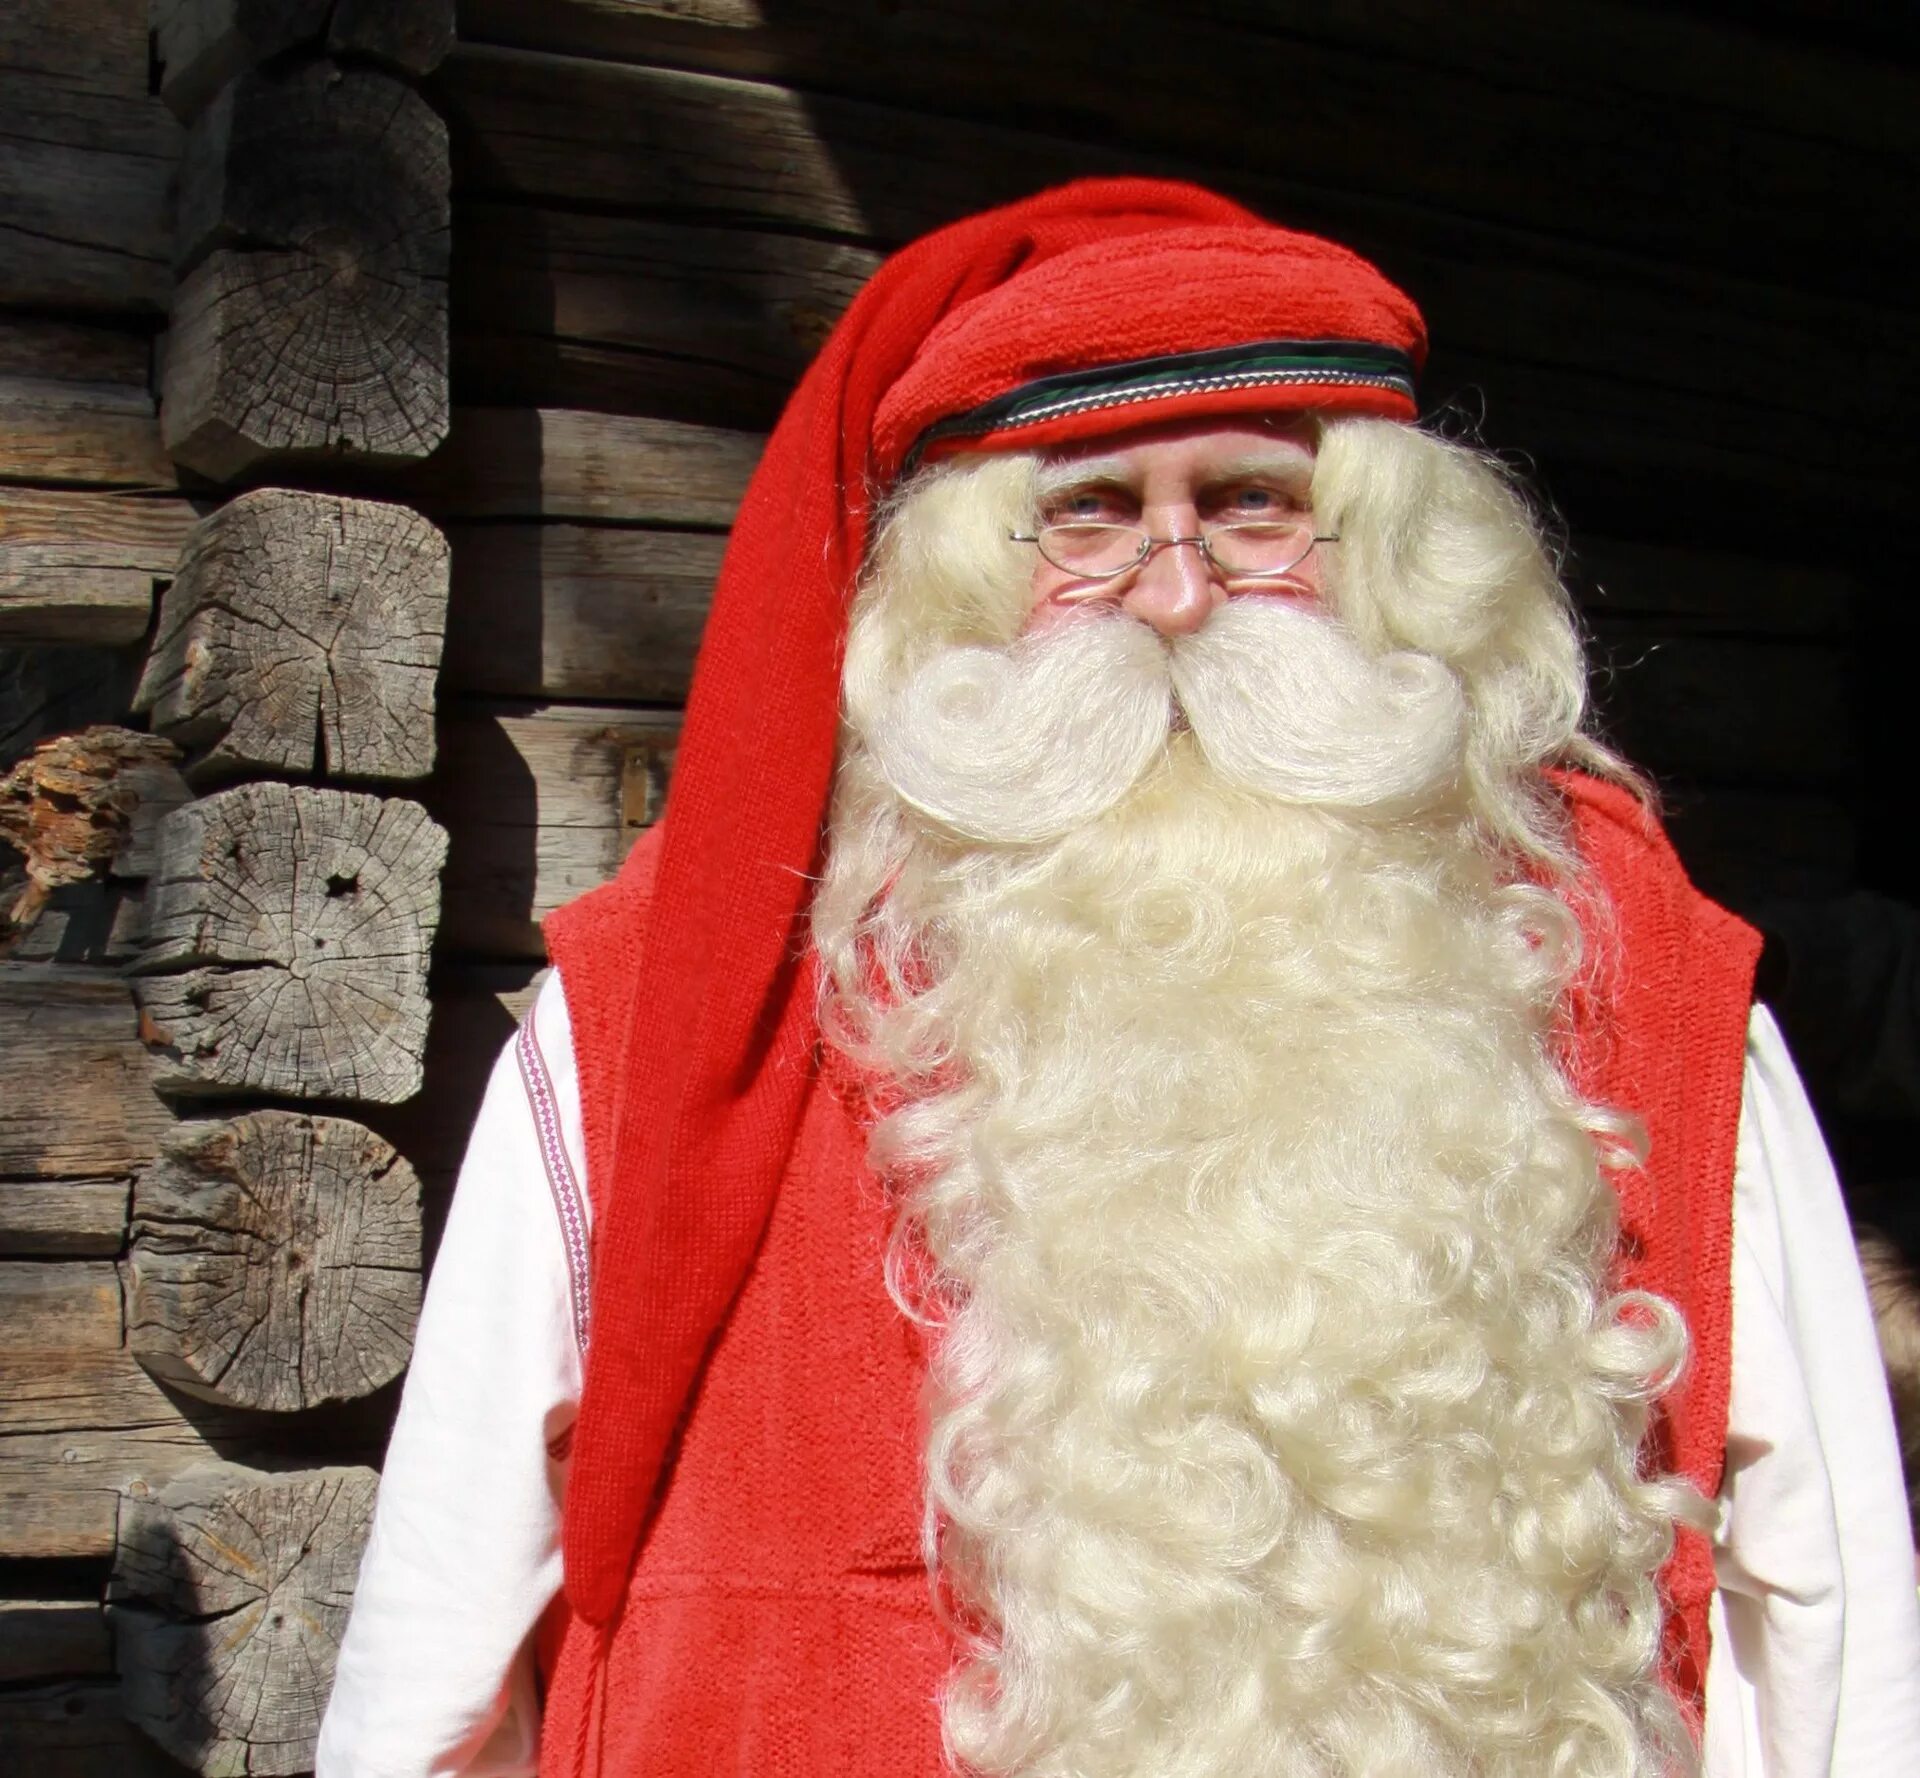 Финский дед Мороз йоулупукки. Дед Мороз в Финляндии йоулупукки. Финляндия: Joulupukki (йоулупукки).